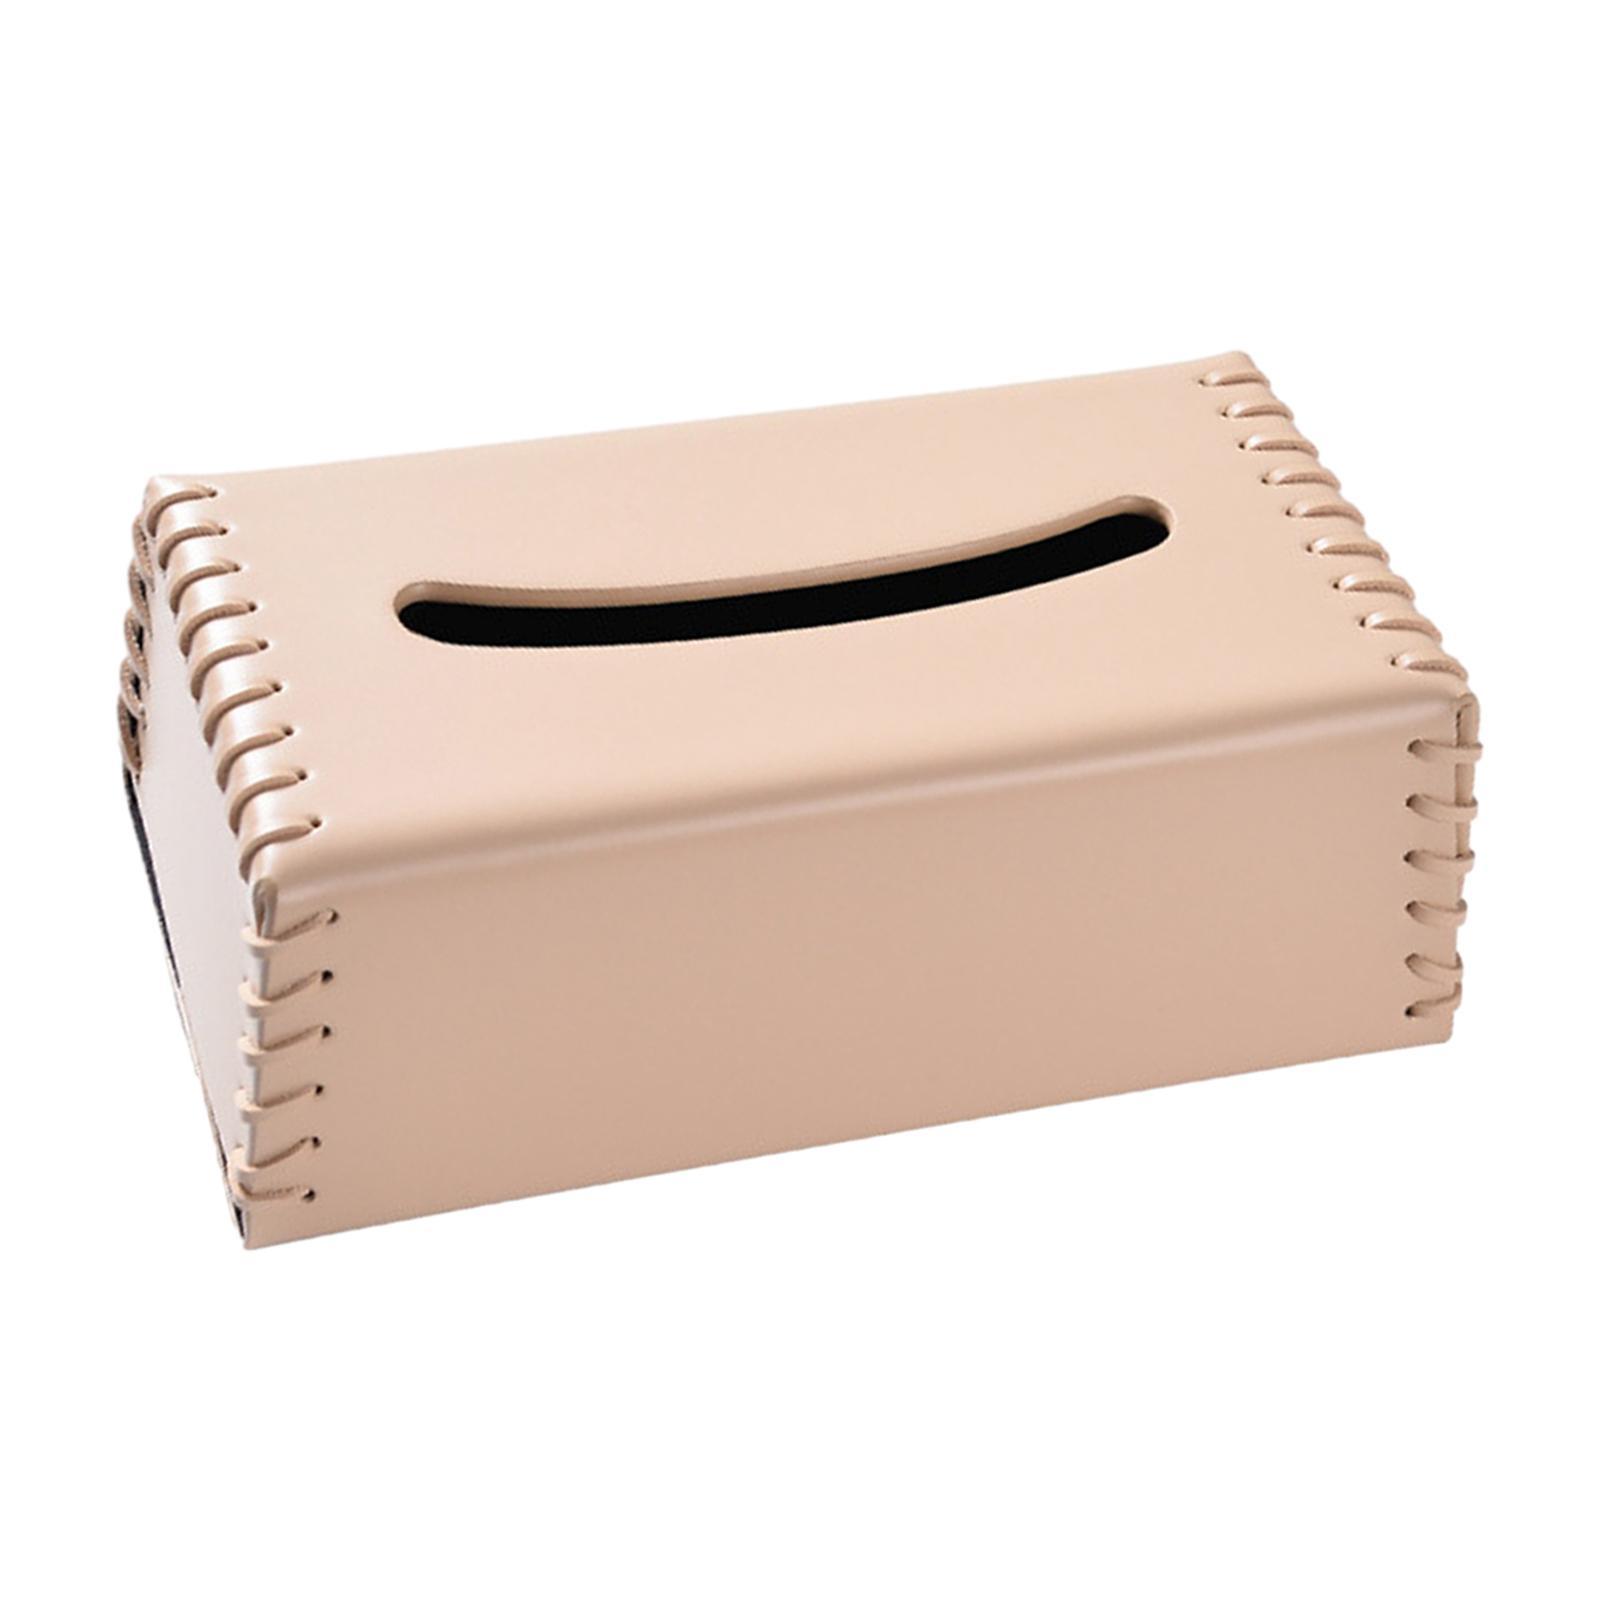 Tissue Dispenser Box Tissue Holder Tissue Case Tissue Paper Holder Bathroom Toilet Paper Holder Facial Tissue Holder for Bedroom Living Room